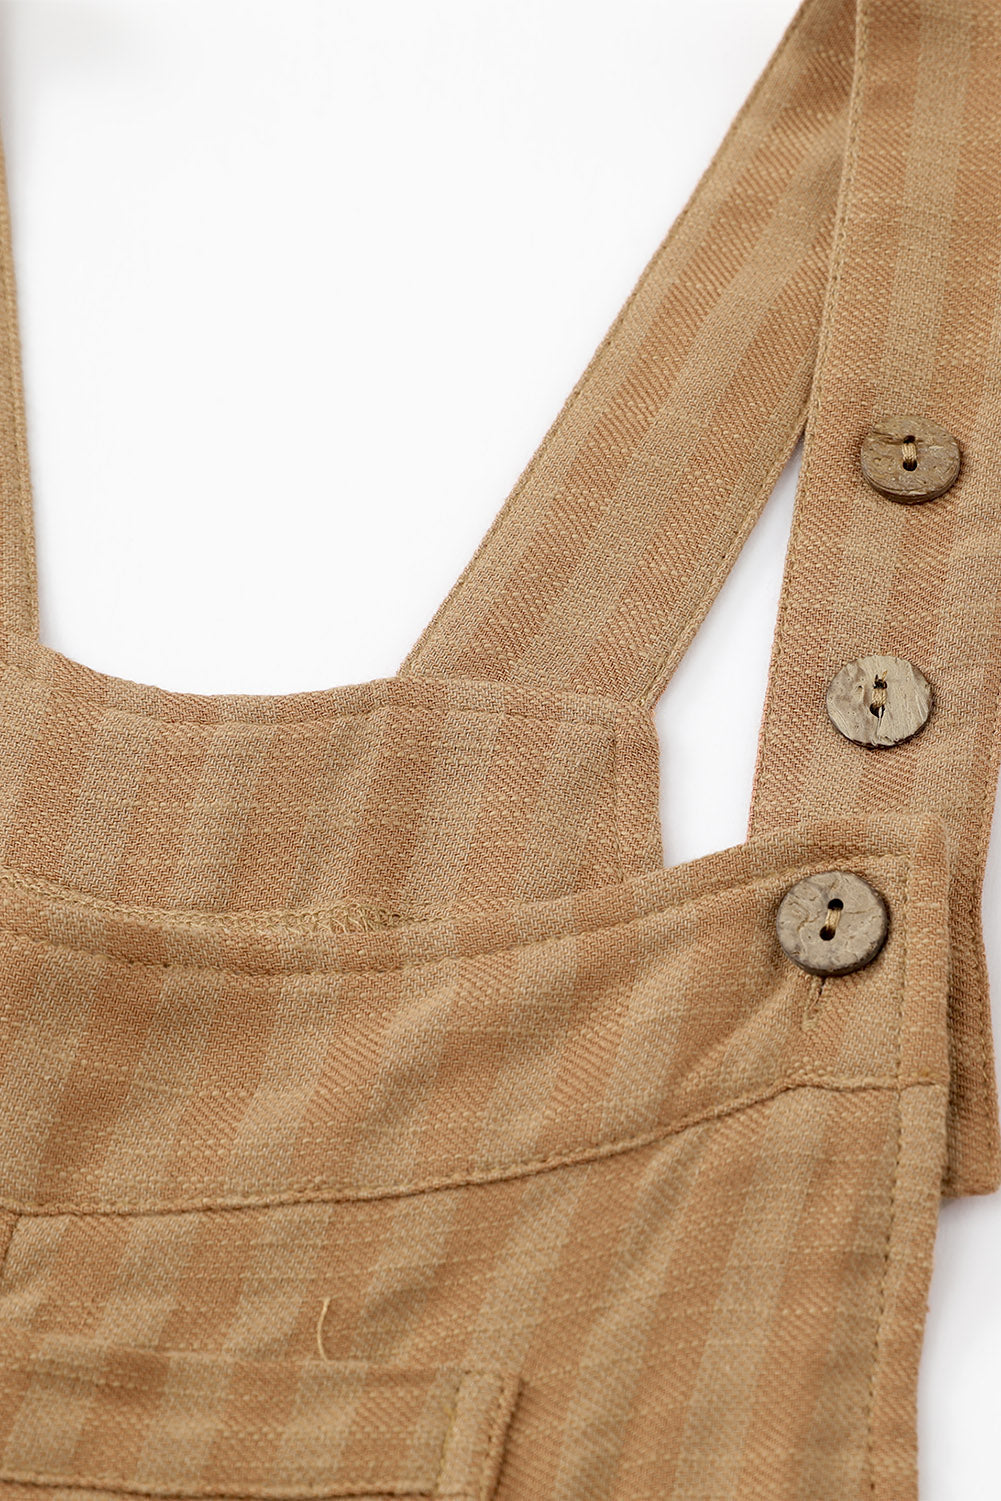 Prugasti plisirani kombinezon s džepovima širokih nogavica u boji cikorije kave